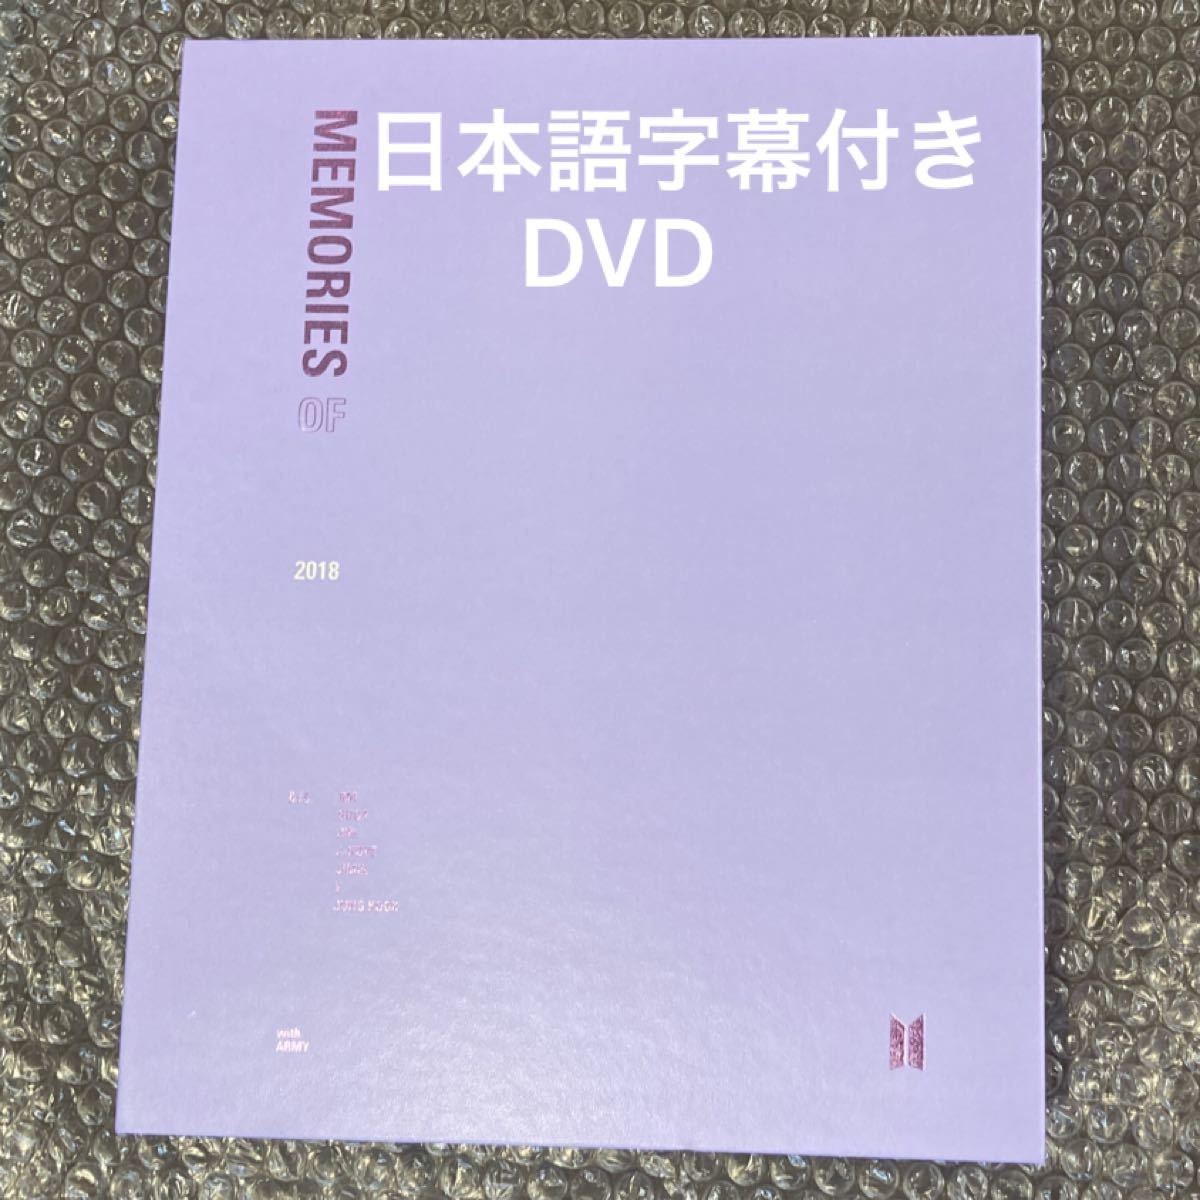 BTS Memories 日本語字幕 DVD 2018